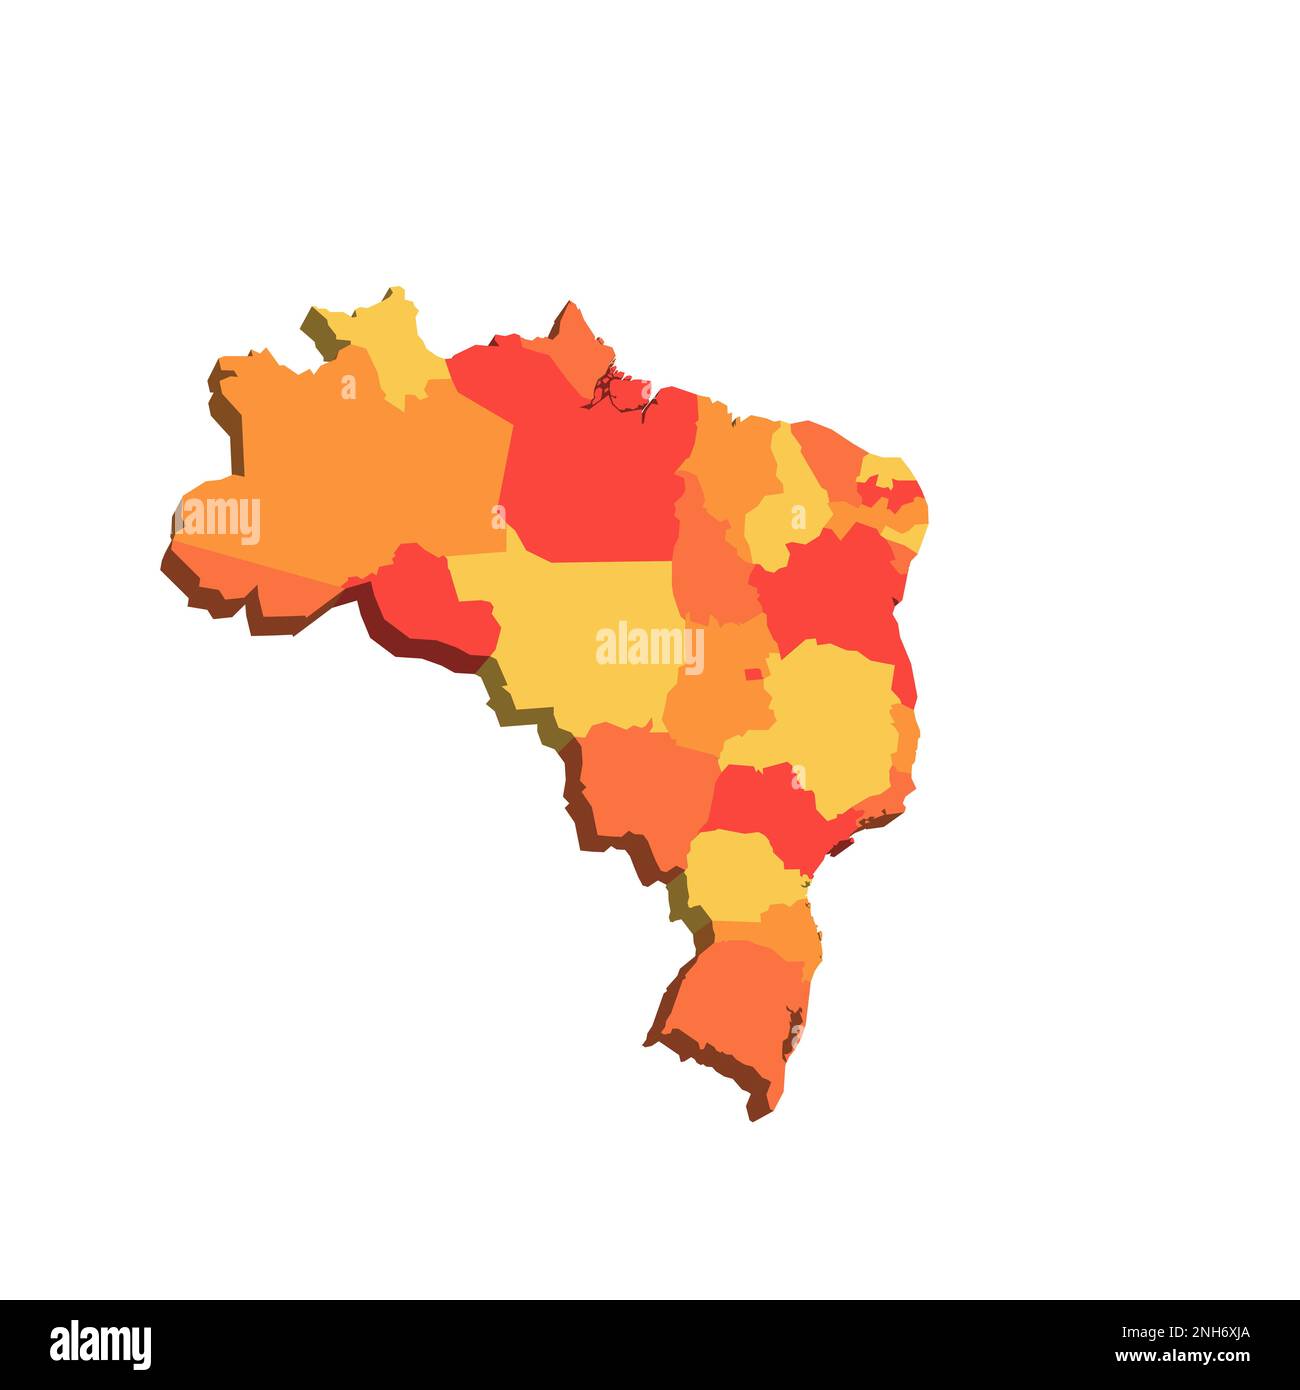 Politische Karte Brasiliens der Verwaltungsabteilungen - Föderative Einheiten Brasiliens. 3D-Karte in orangefarbenen Farbtönen. Stock Vektor